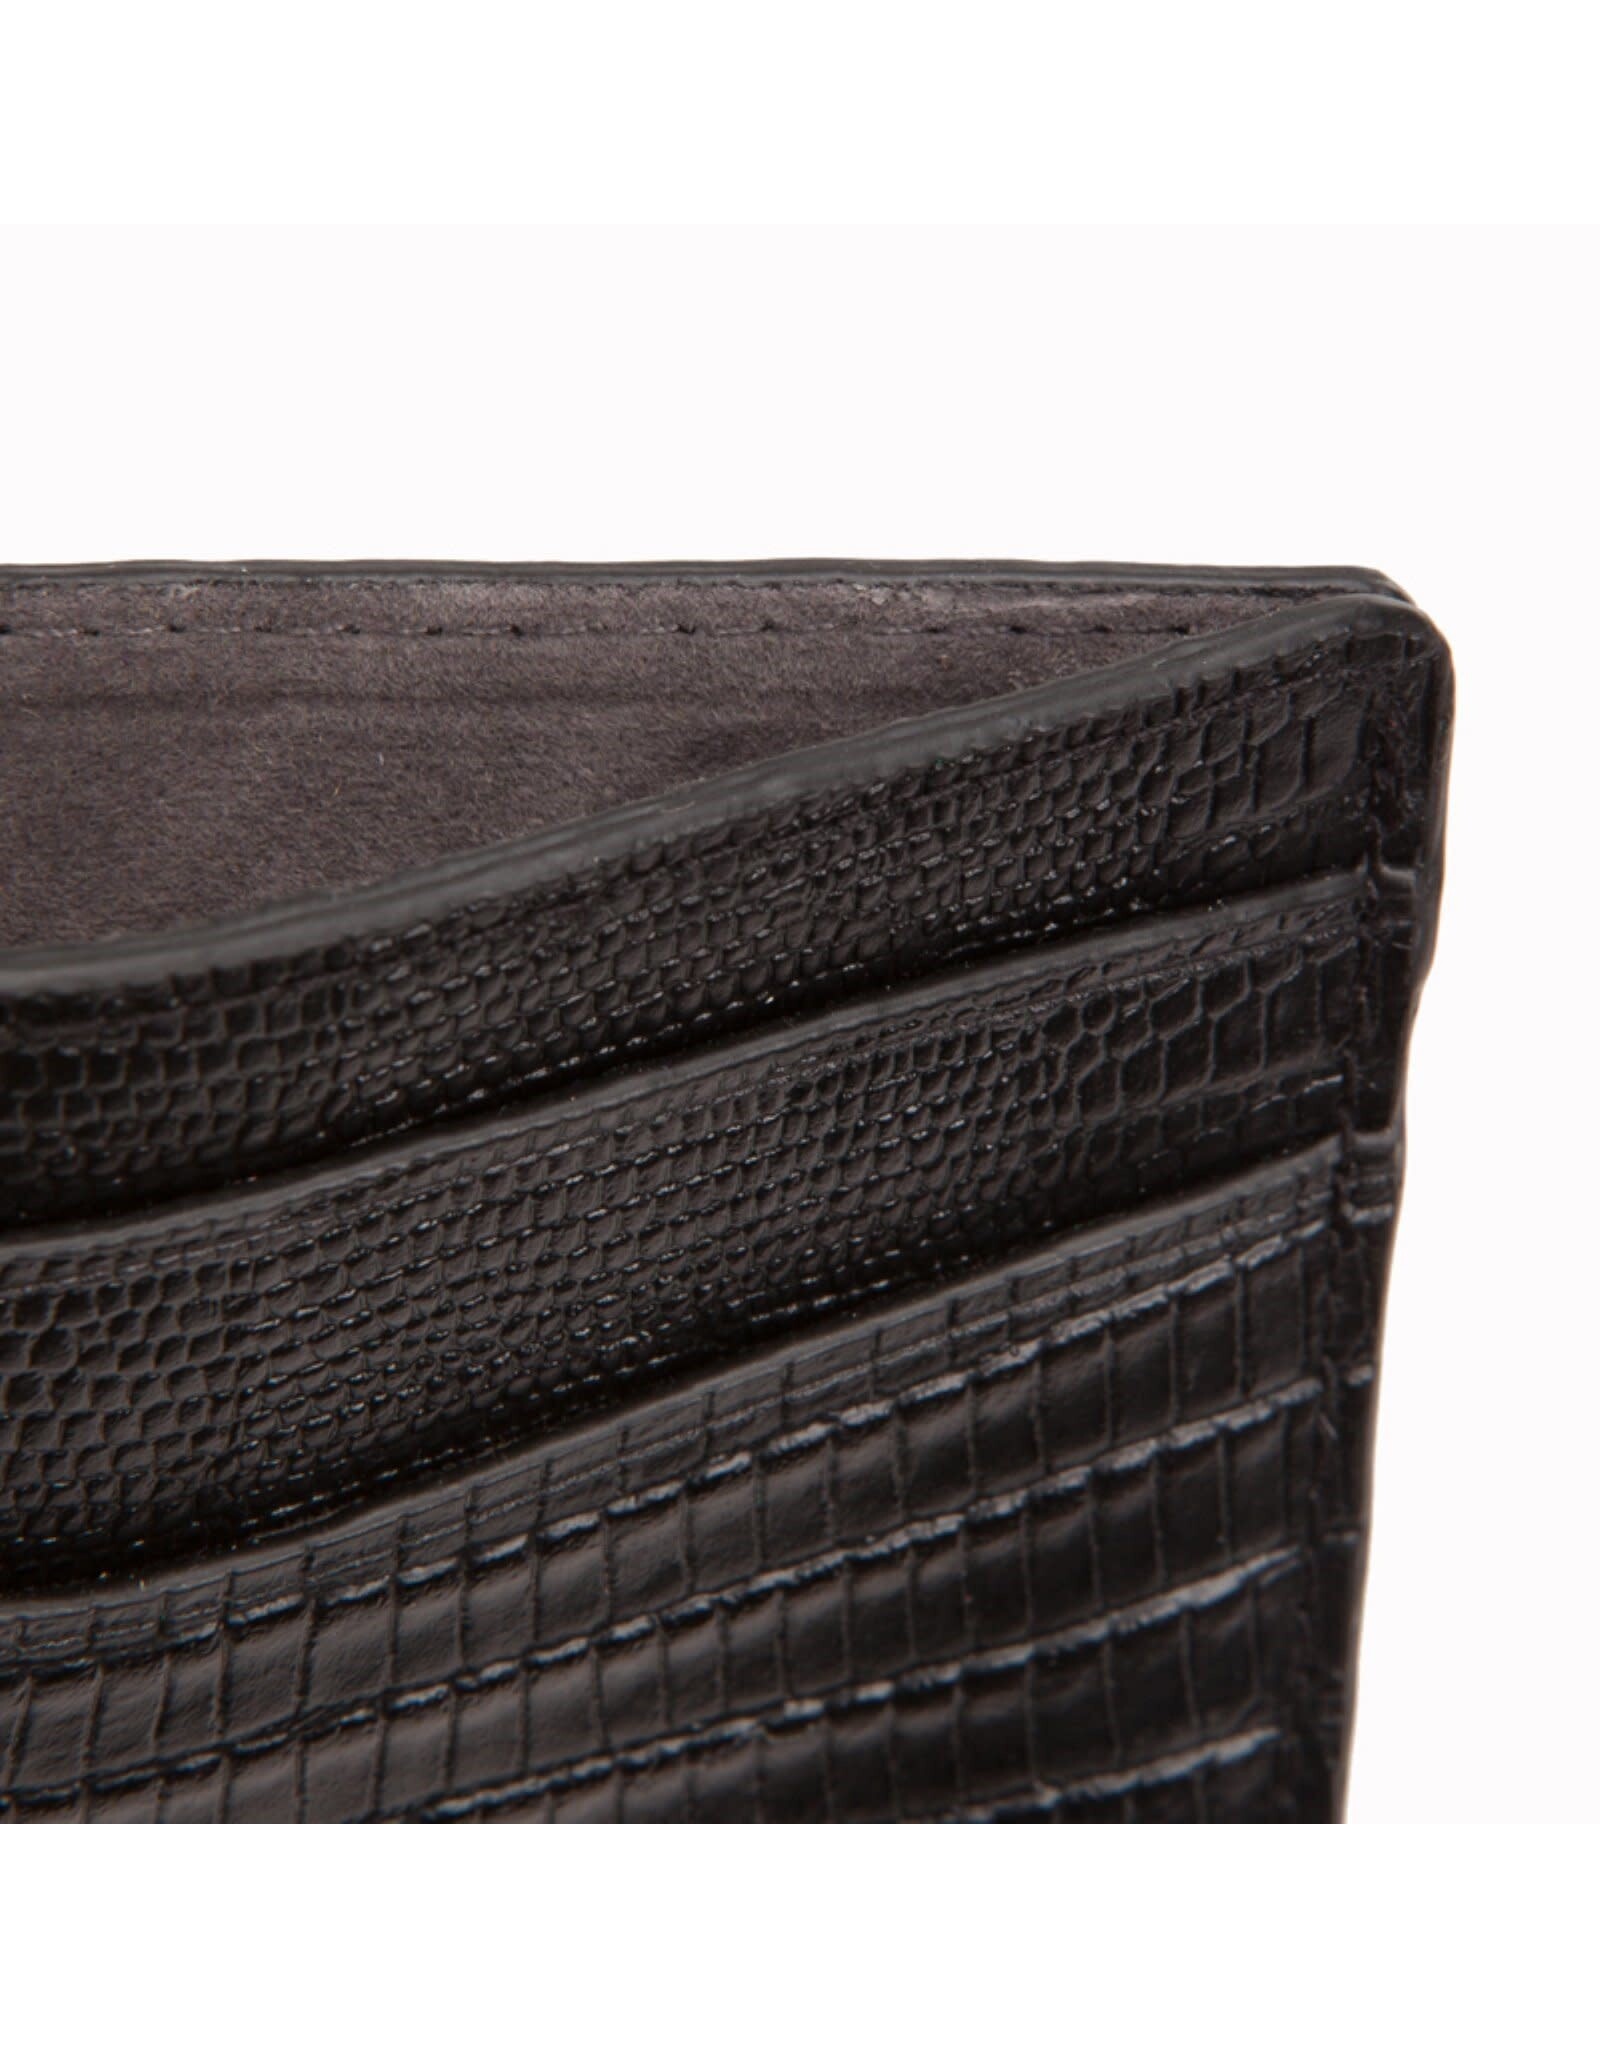 Mens Blake Card Wallet Black Teju Lizard Embossed Leather